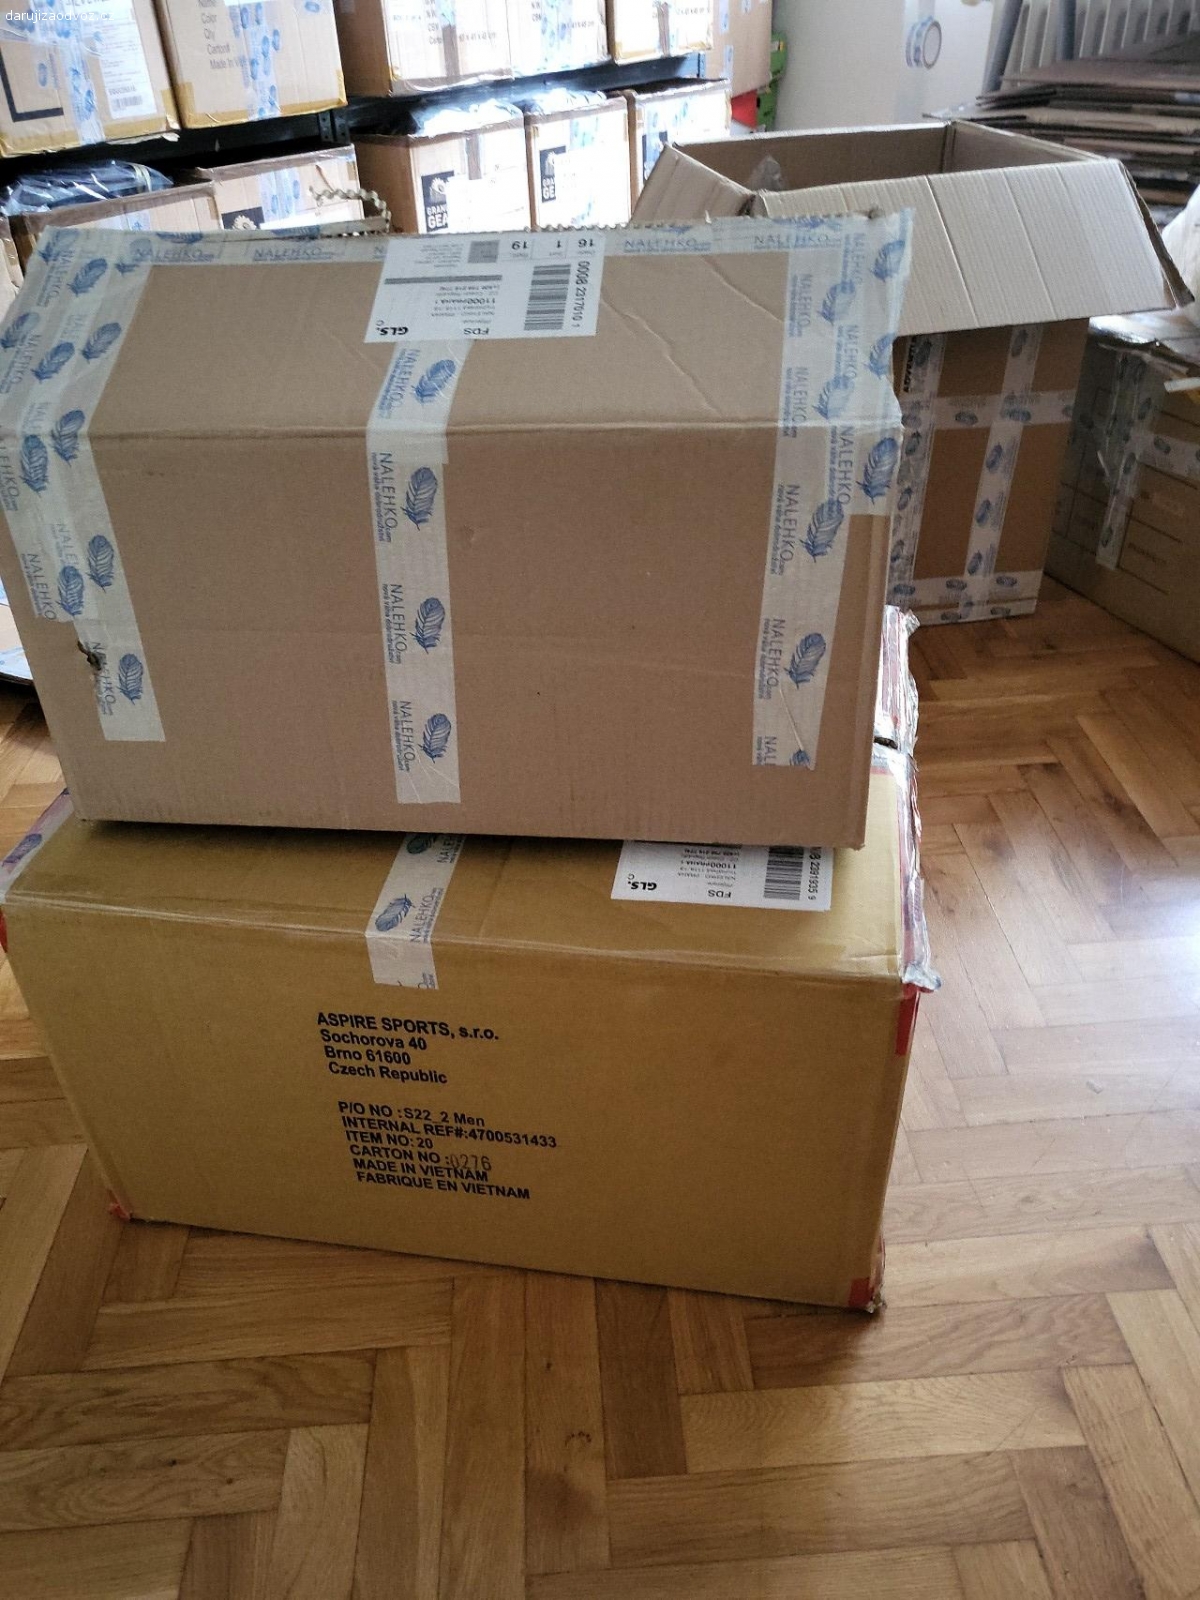 Daruji papírové krabice. Daruji papírové krabice, vhodné ke stěhování či uskladnění věcí, rozměry cca 90×60×40 cm. K vyzvednutí na Praze 1.